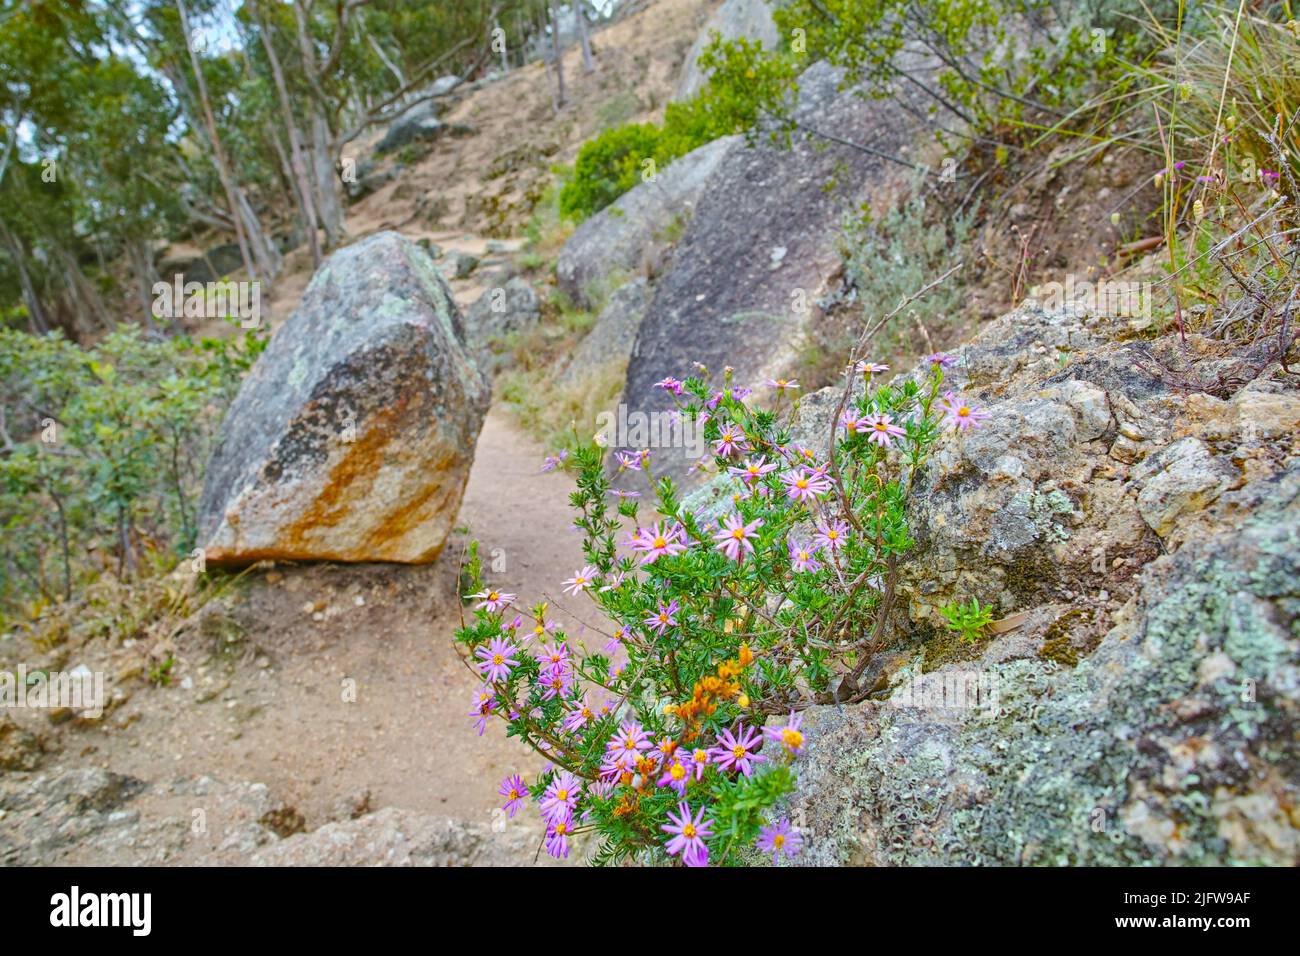 Primer plano de flores de Fynbos de color púrpura y rosa que crecen en un paisaje rocoso de montaña con copyspace. Plantas exclusivas de Cape Floral Kingdom. Casquillos a lo largo de A. Foto de stock